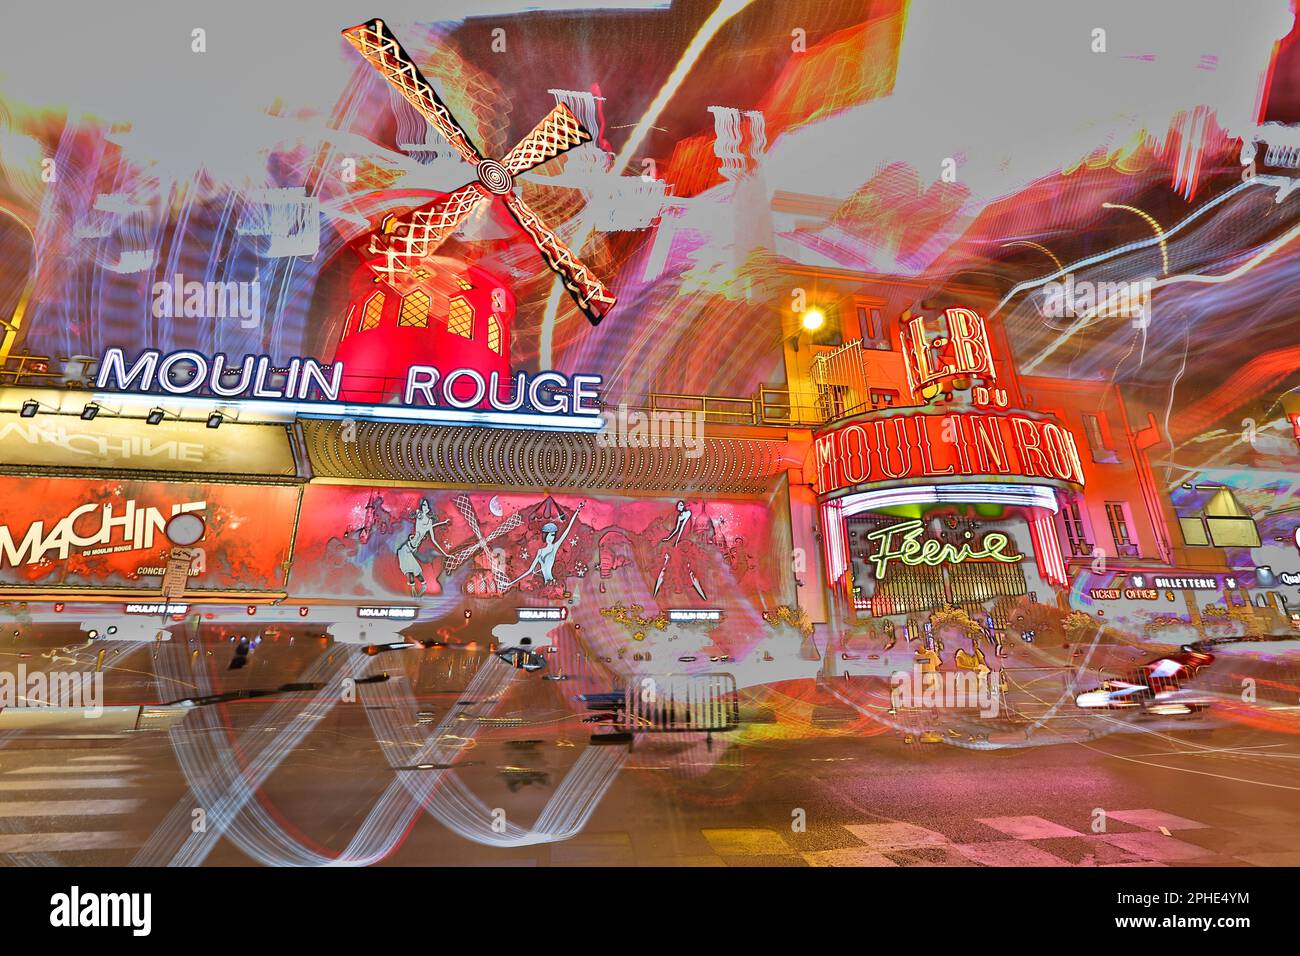 Illustration photo du Moulin Rouge, cabaret historique parisien légendaire à Pigalle, Montmartre, Paris, France, image représentative Banque D'Images